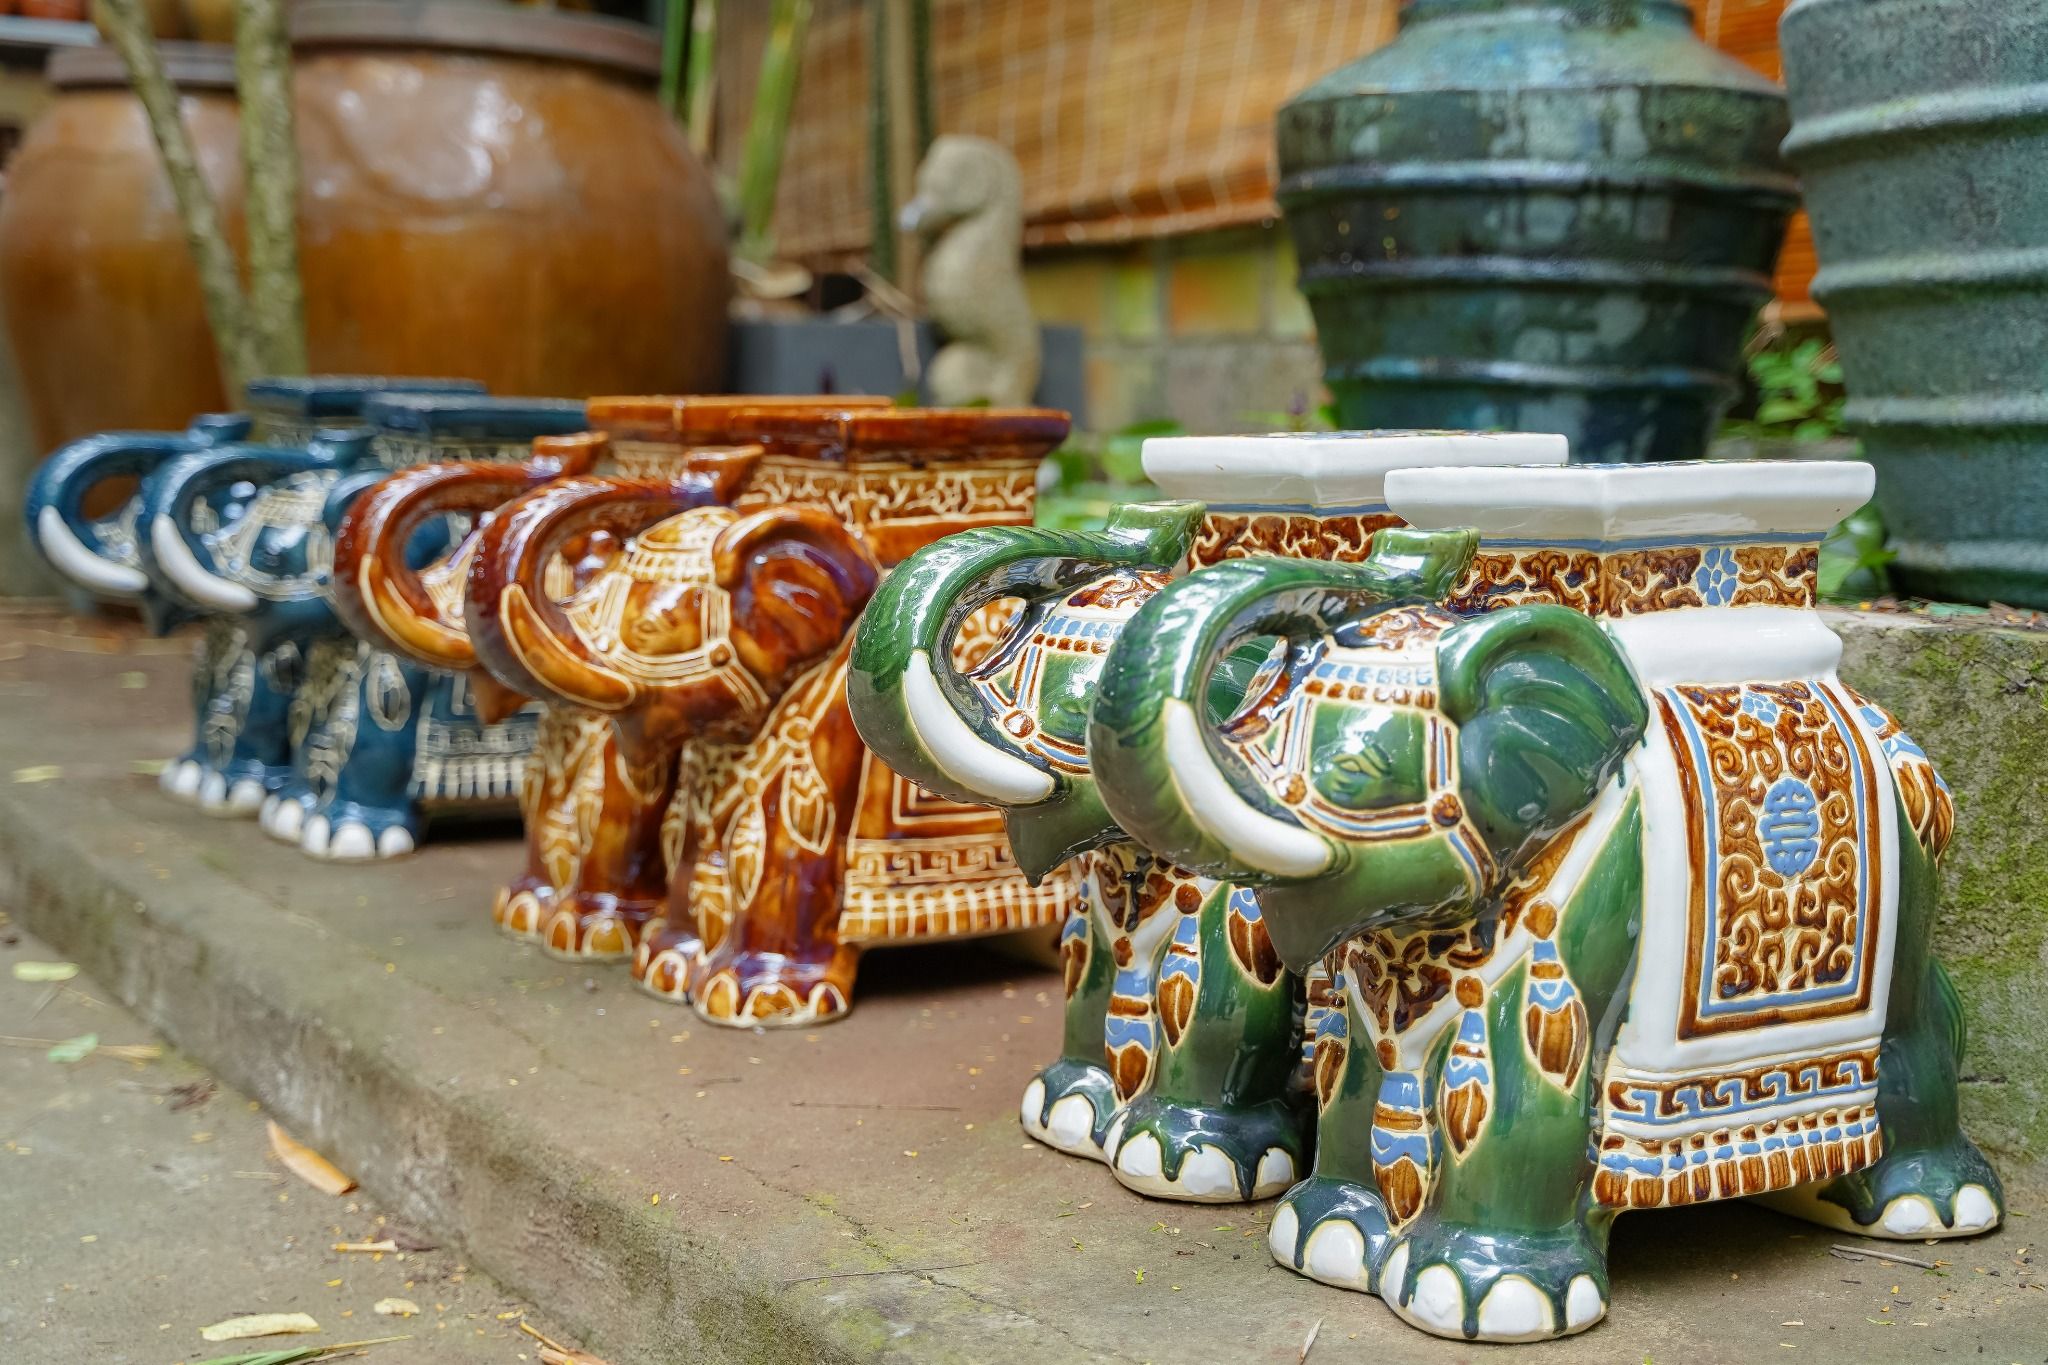  Đôn voi truyền thống, gốm Nam Bộ, gợi nhớ ký ức, xanh lá và nhiều màu sắc, C43 x R50cm 